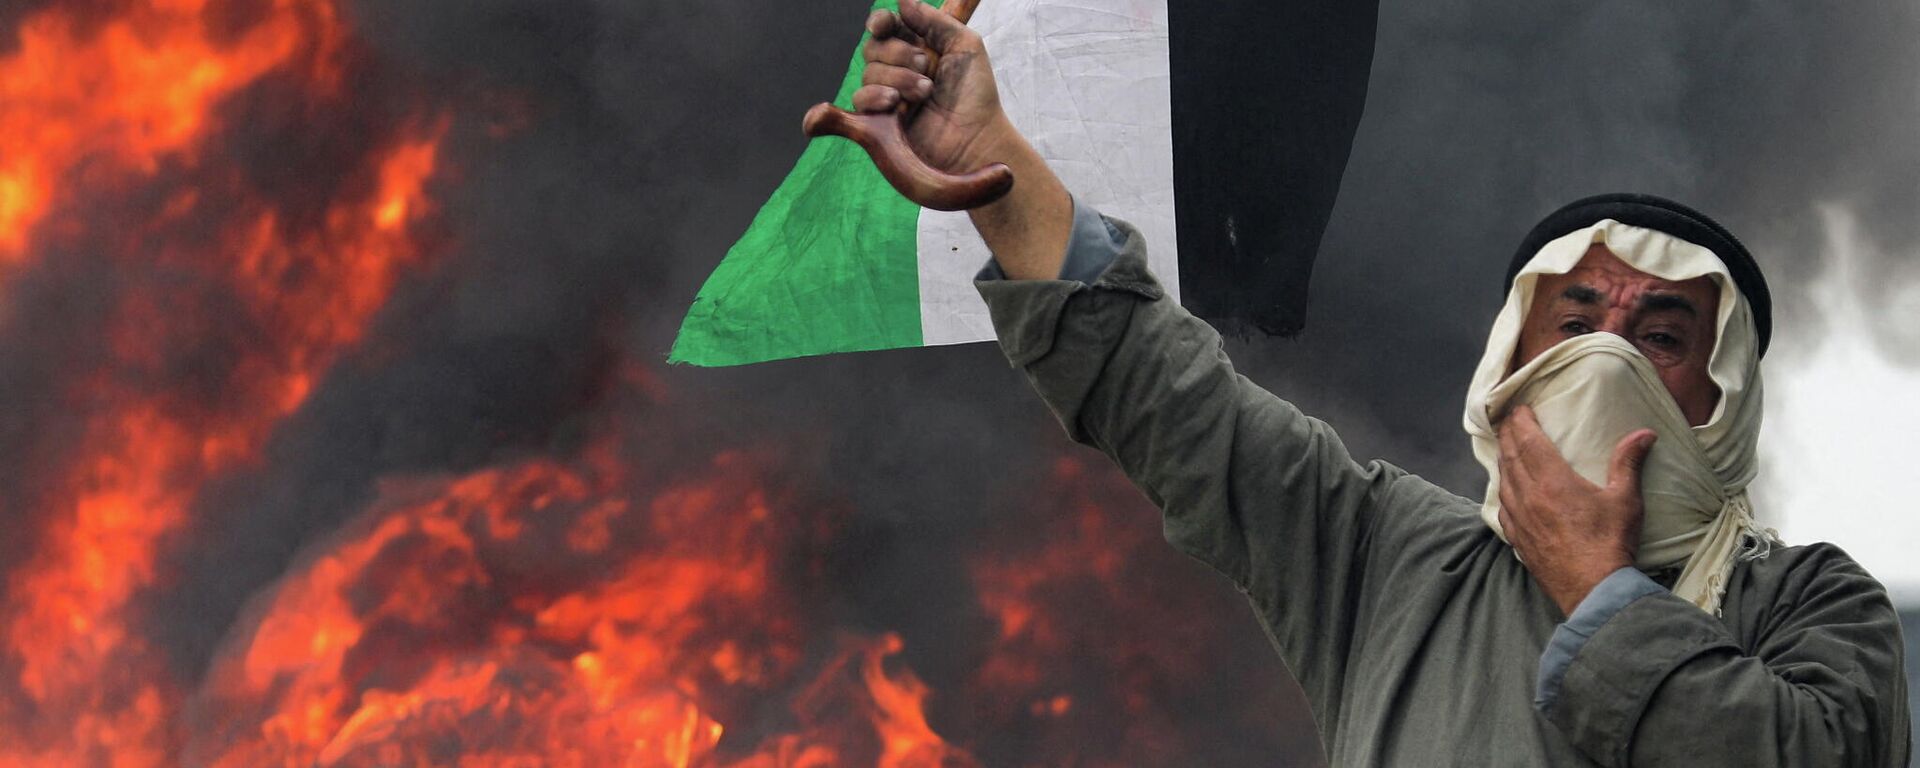 متظاهر فلسطيني يرفع علم فلسطين أمام حاجز من الإطارات المشتعلة في البرقة، الضفة الغربية المحتلة، 23 ديسمبر 2021 - سبوتنيك عربي, 1920, 01.01.2022